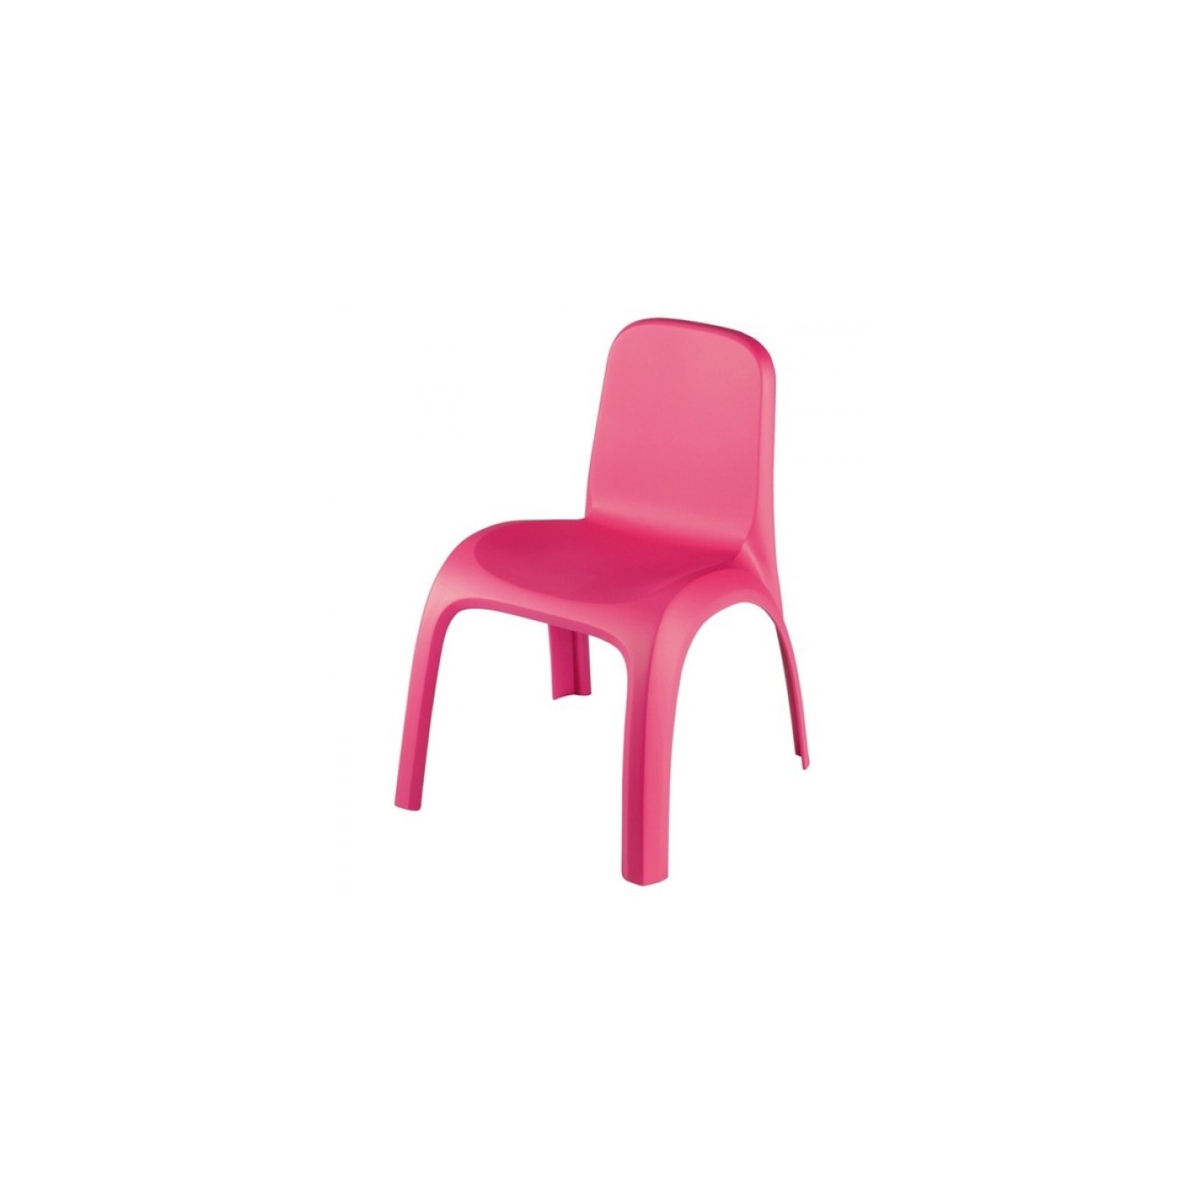 Стульчик детский (розовый). Стул Pilsan King зелeный. Бежево розовый стул. Детские стулья Леруа Мерлен. Стул без запаха